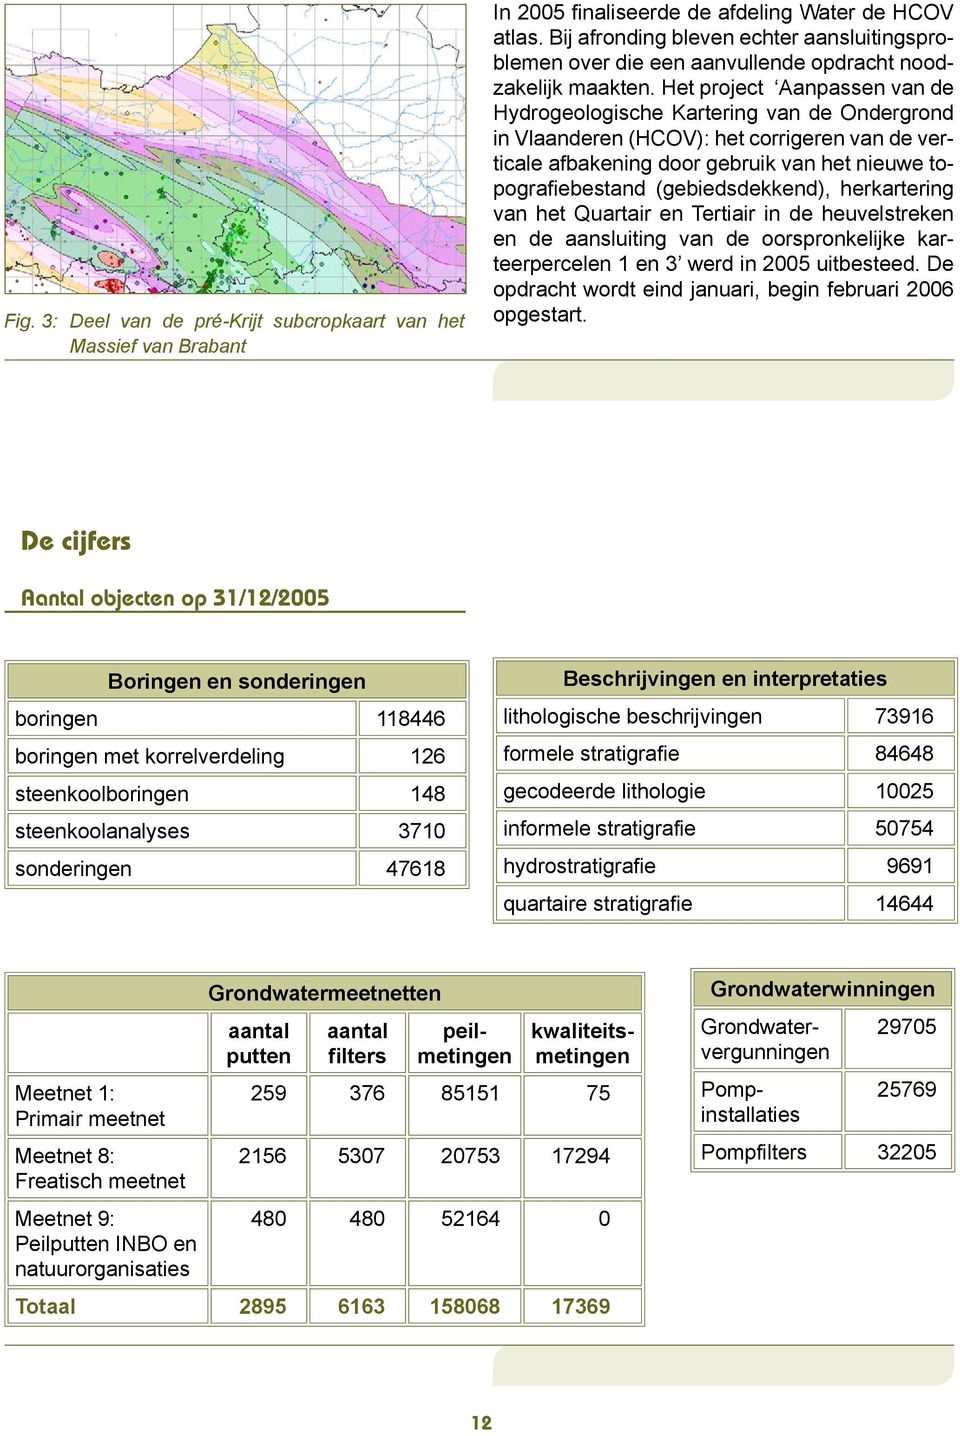 Het project Aanpassen van de Hydrogeologische Kartering van de Ondergrond in Vlaanderen (HCOV): het corrigeren van de verticale afbakening door gebruik van het nieuwe topografiebestand